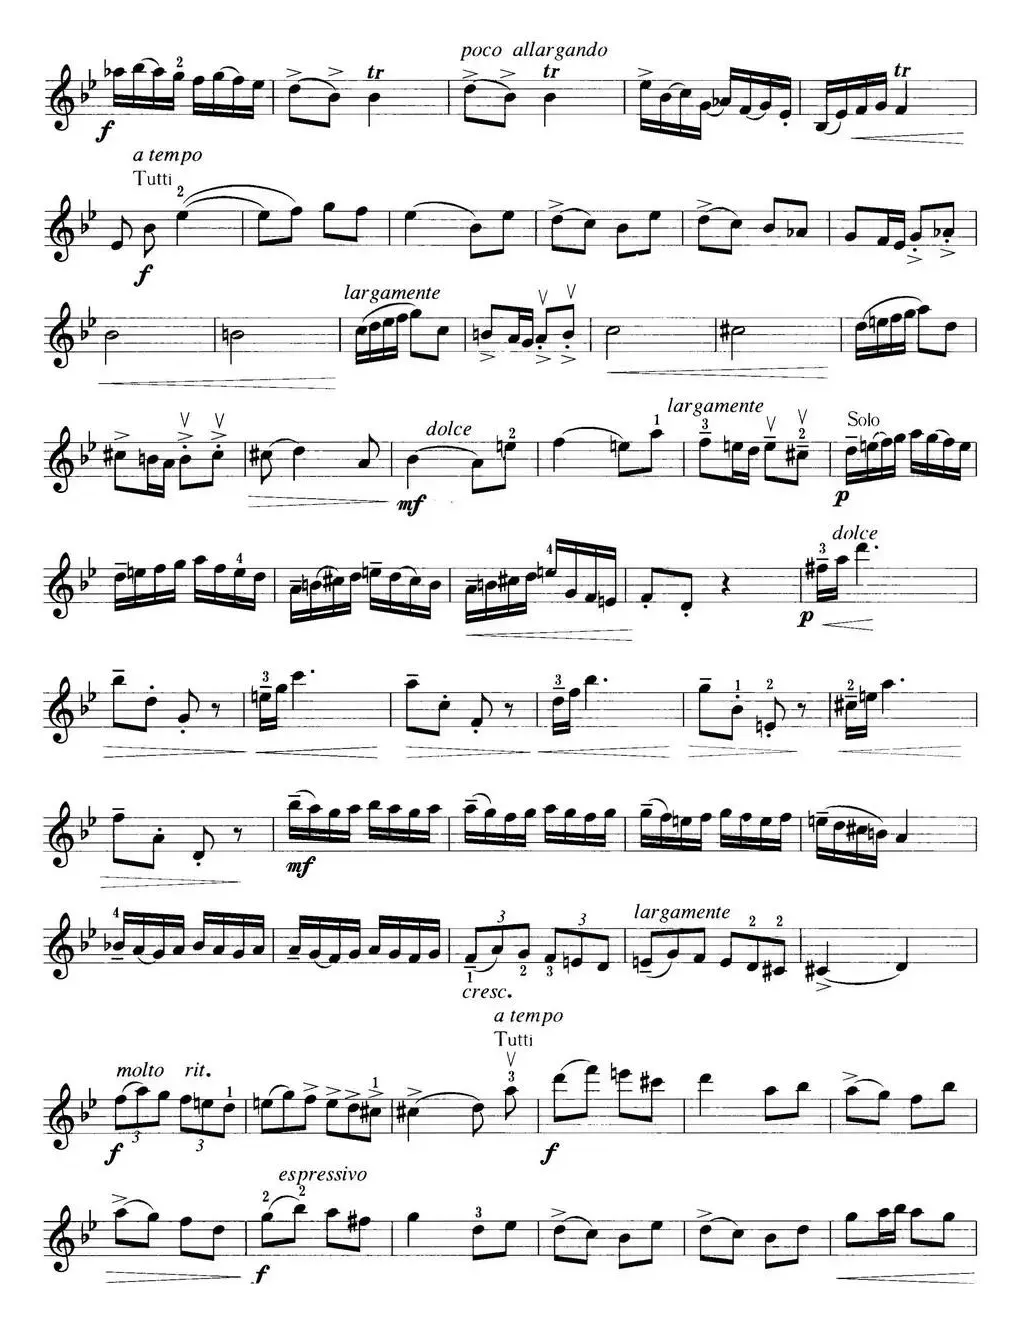 小提琴考级第五级：外国乐曲（6首）